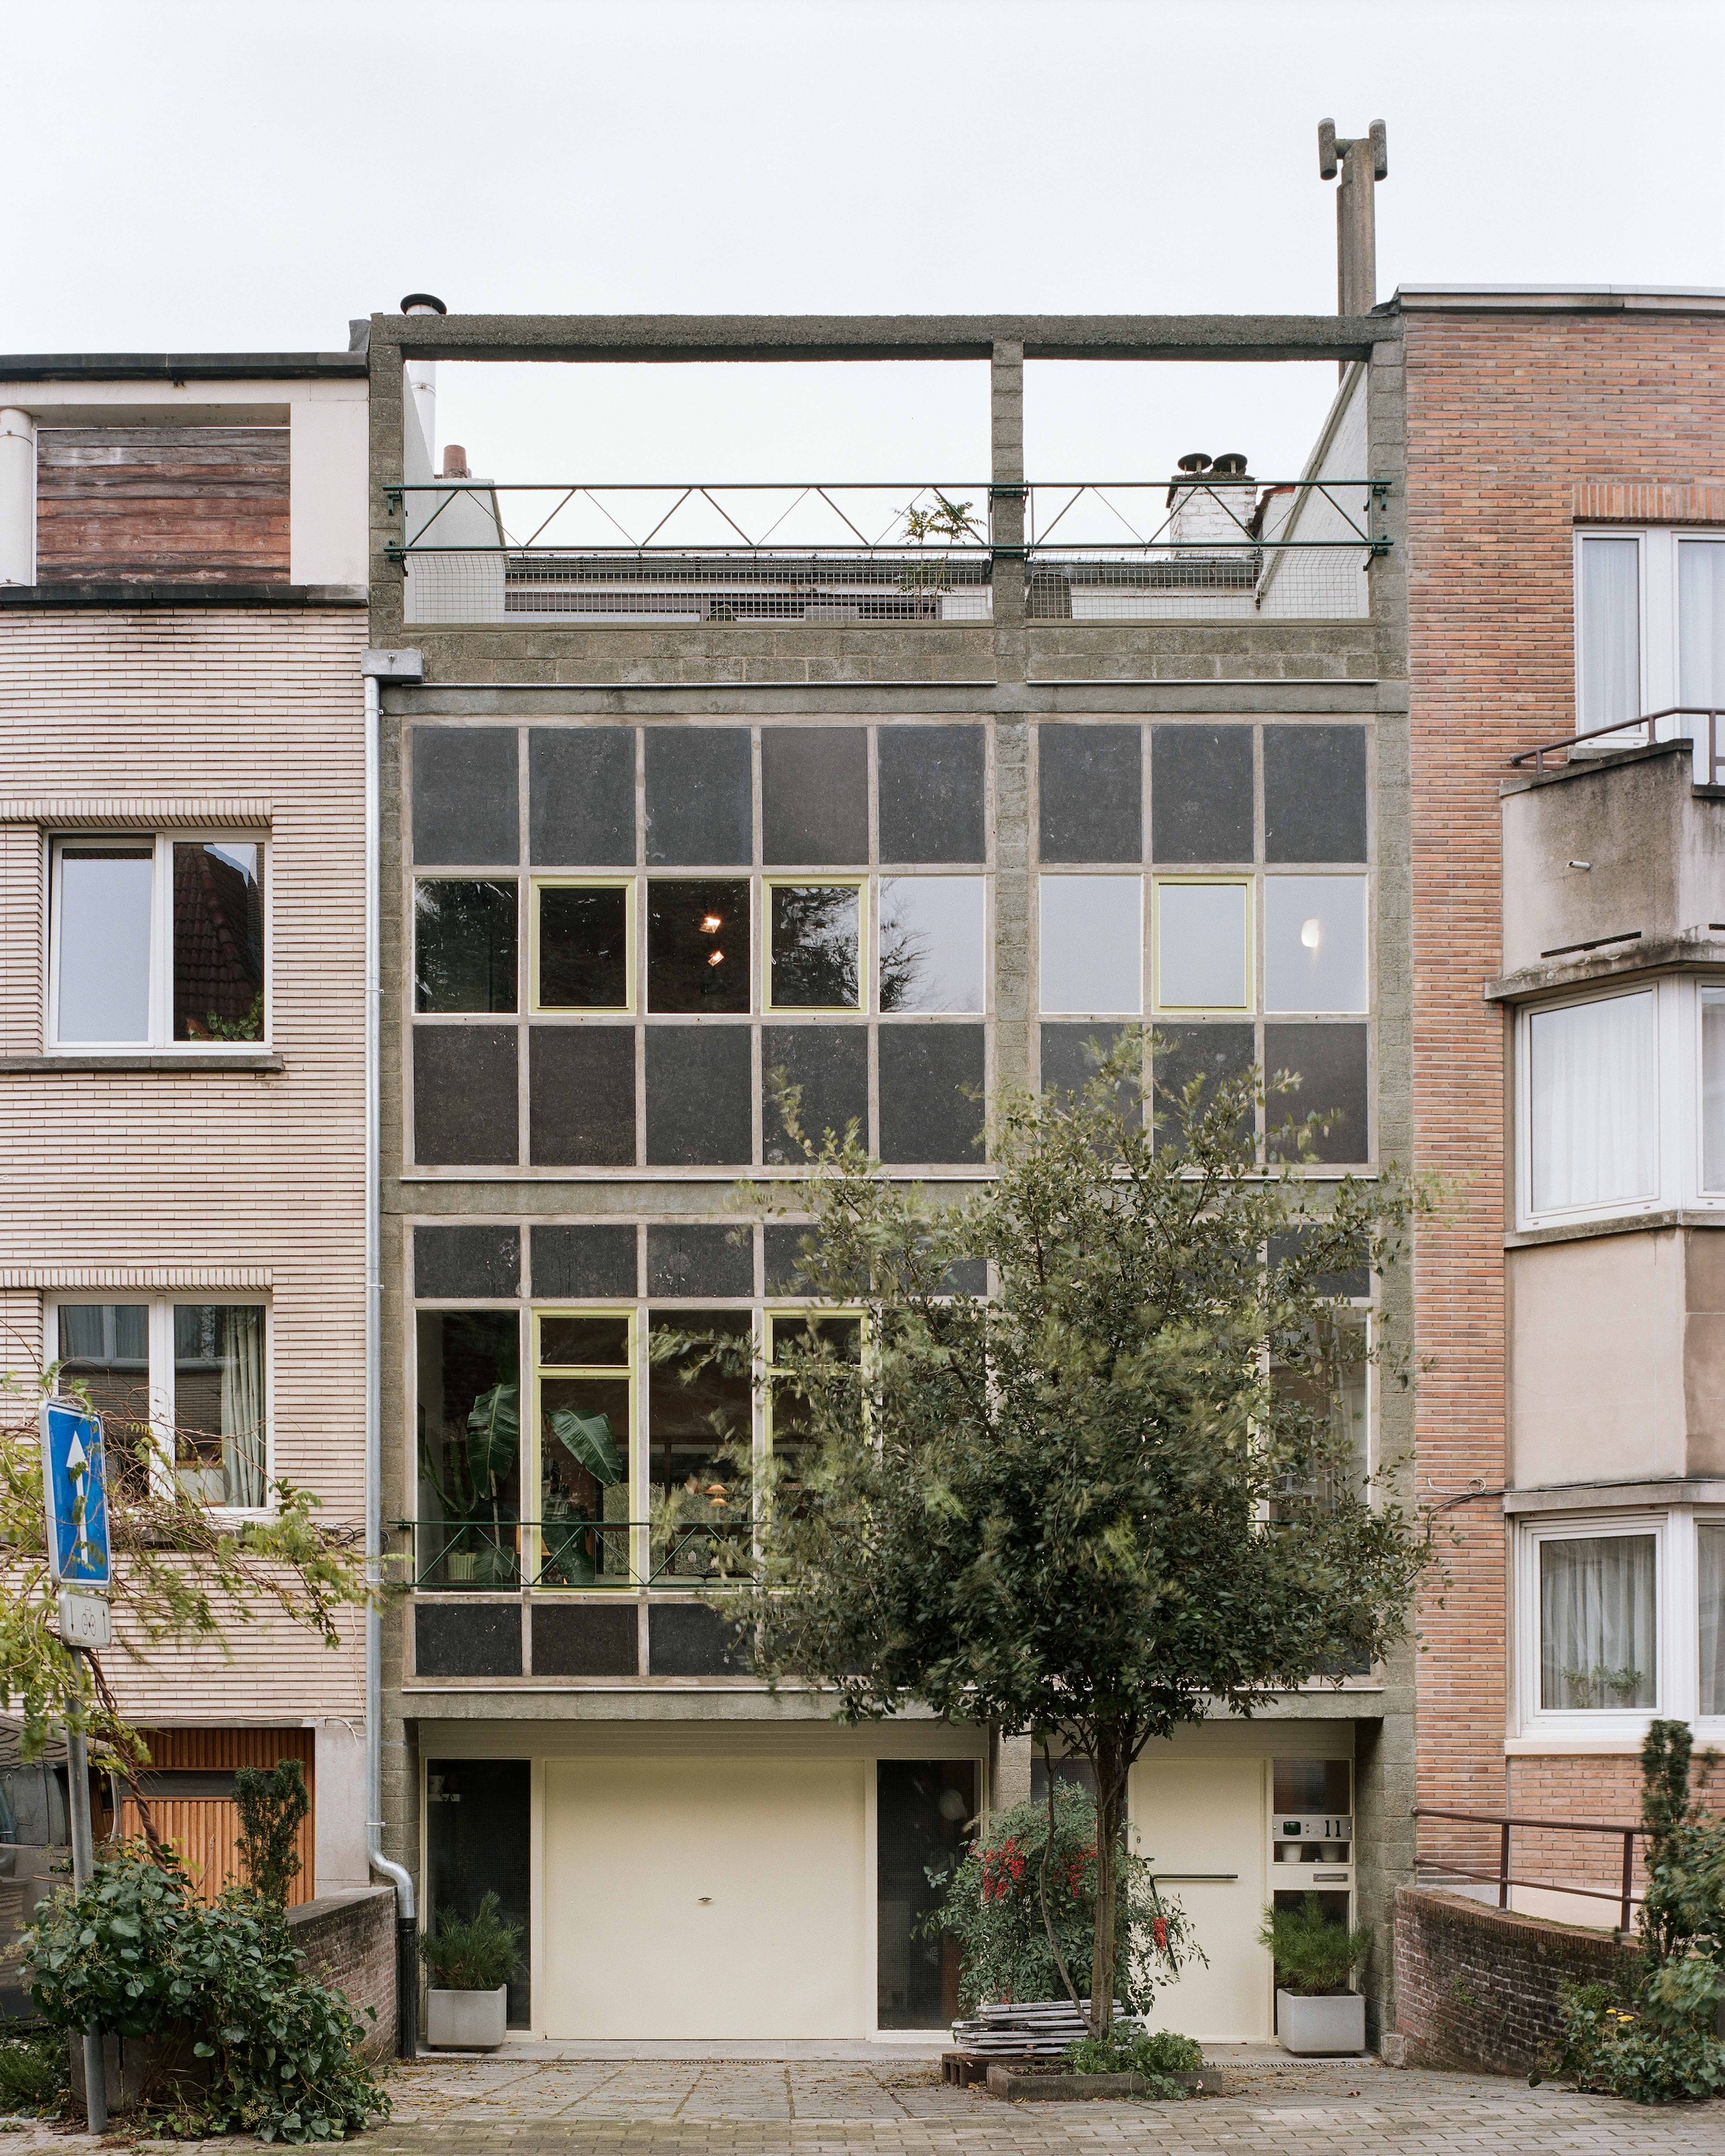 willy van der meeren 1960s building in belgium updated by atelier avondzon. 113